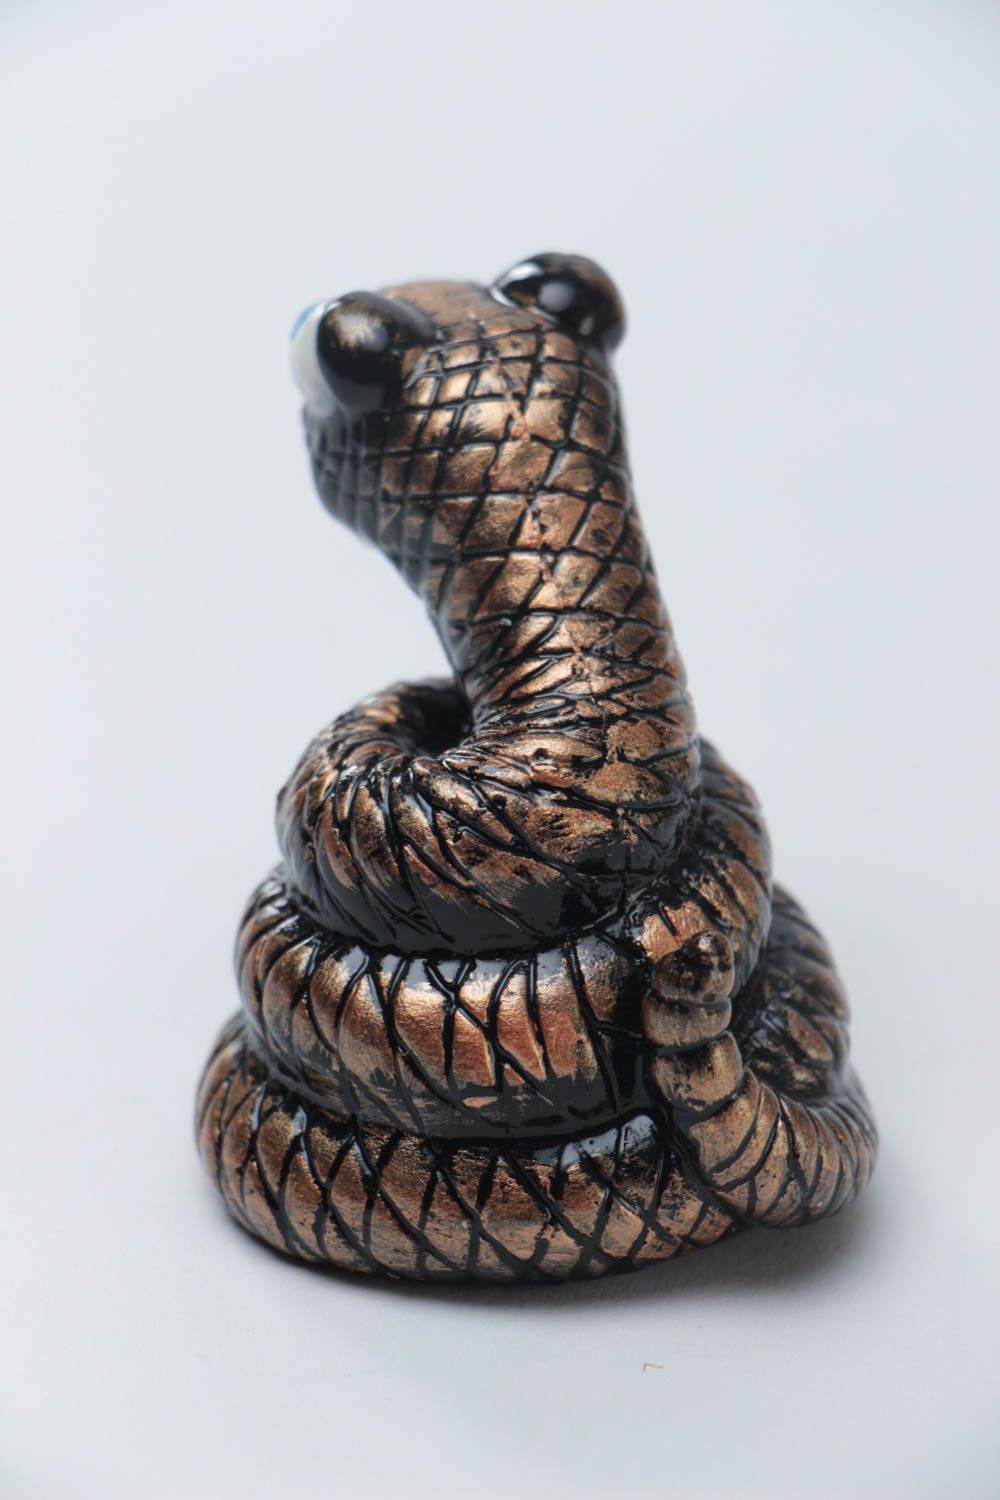 Темная статуэтка змеи из гипса ручной работы оригинальная красивая расписная фото 3